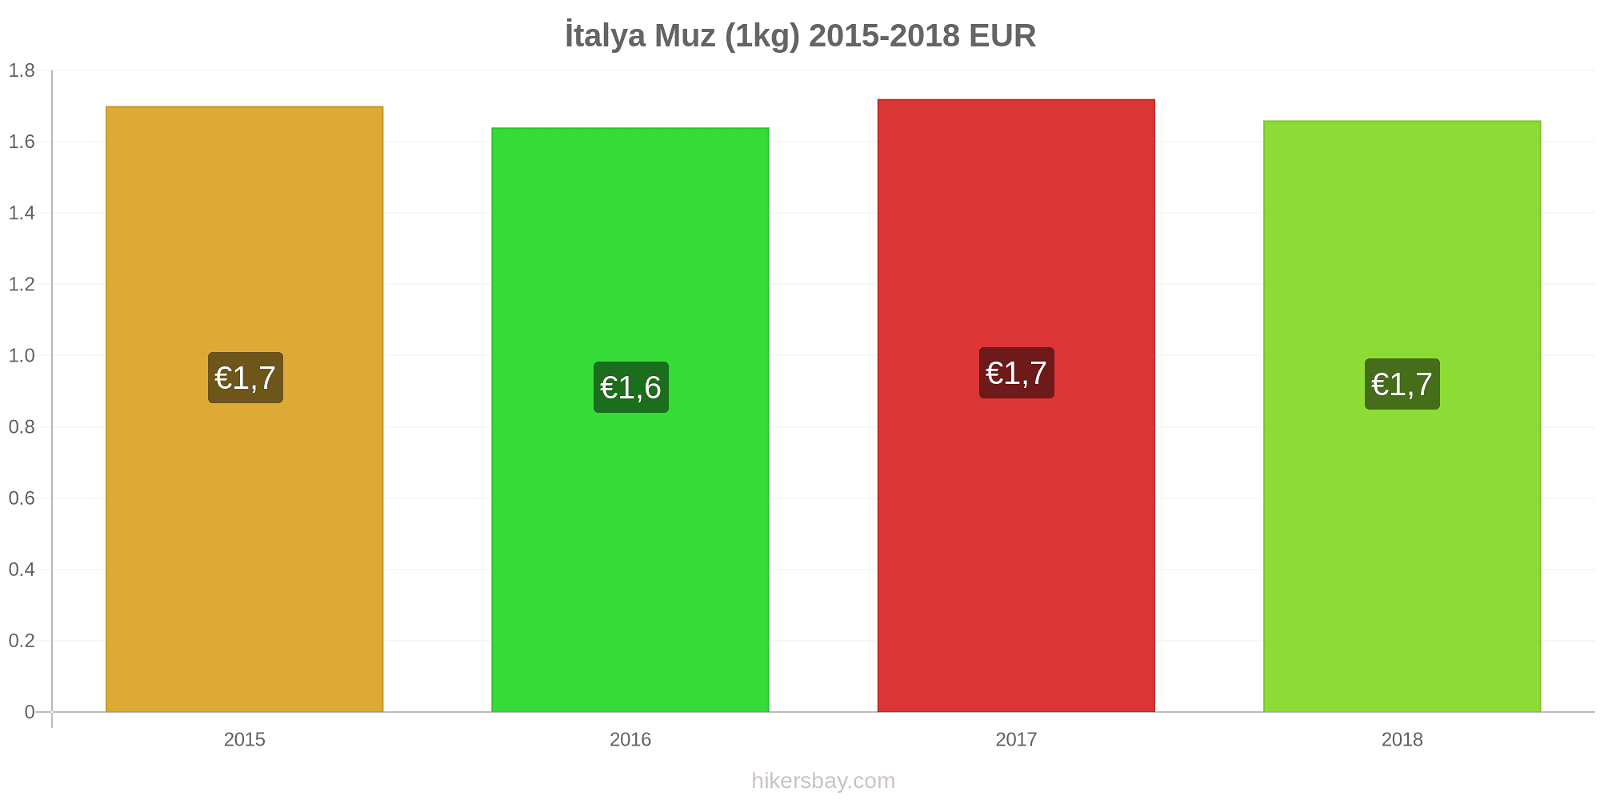 İtalya fiyat değişiklikleri Muzlar (1kg) hikersbay.com